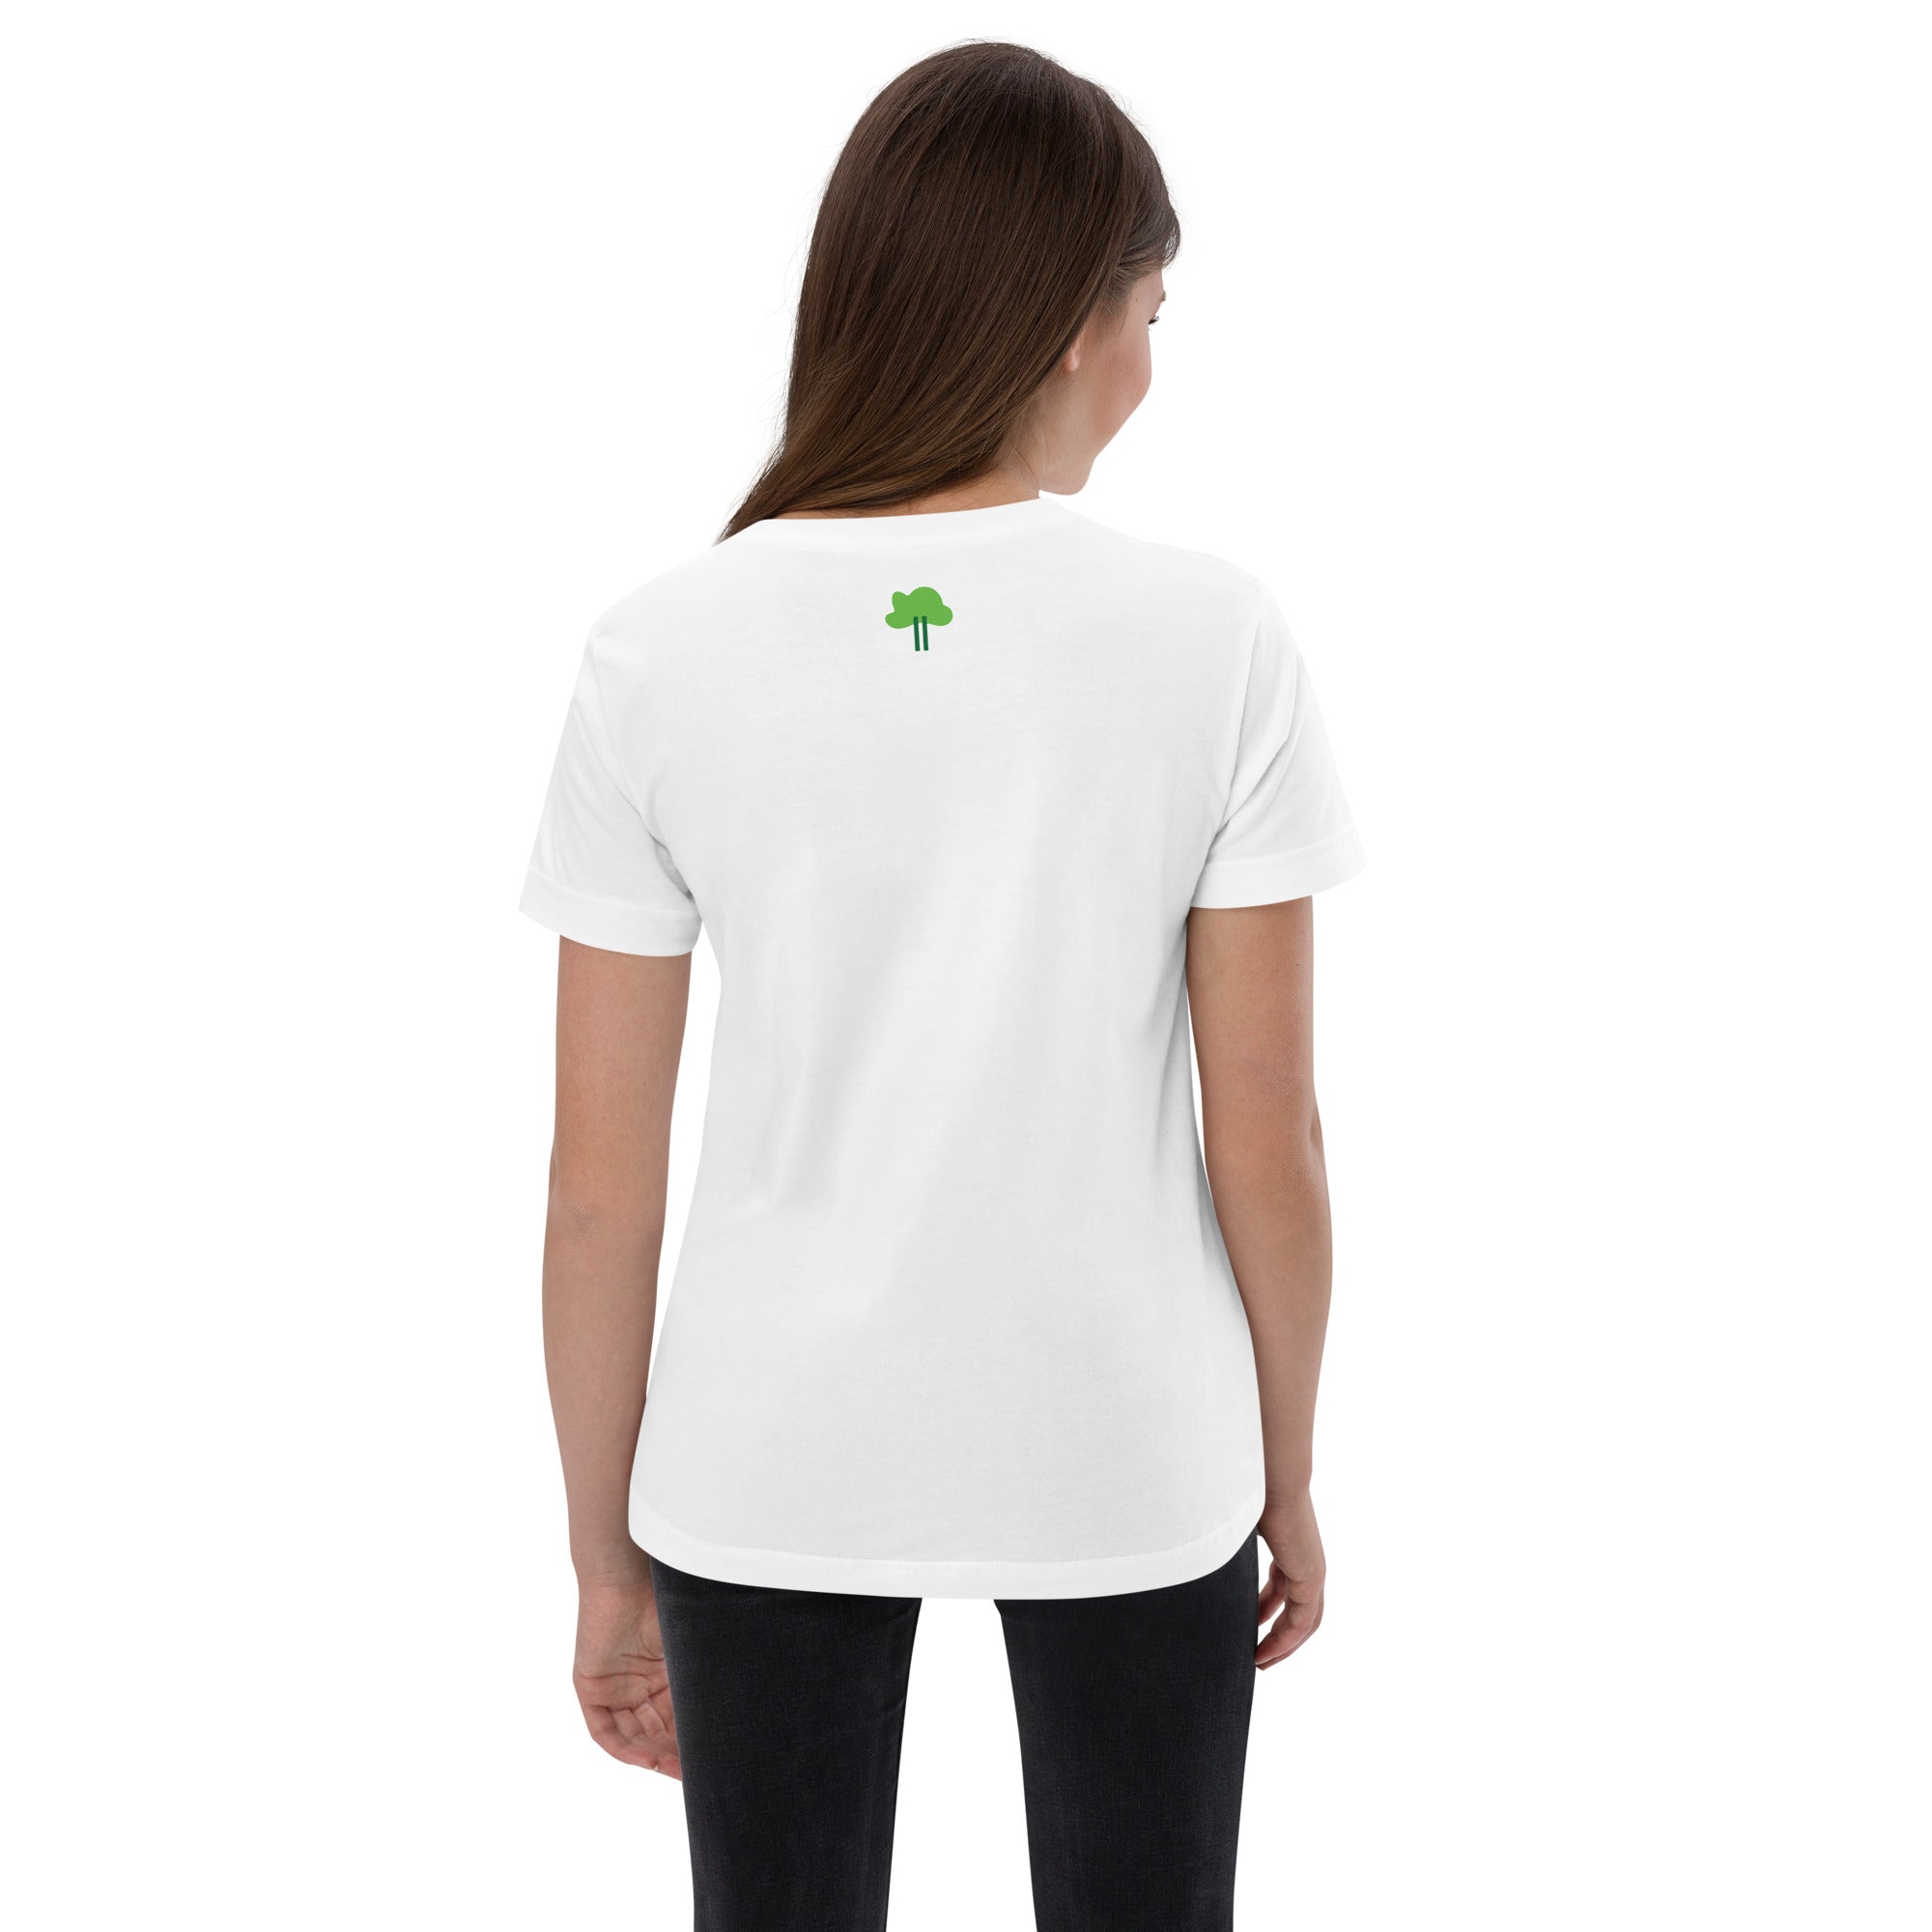 I Temp - Lago - K3 | Youth jersey t-shirt